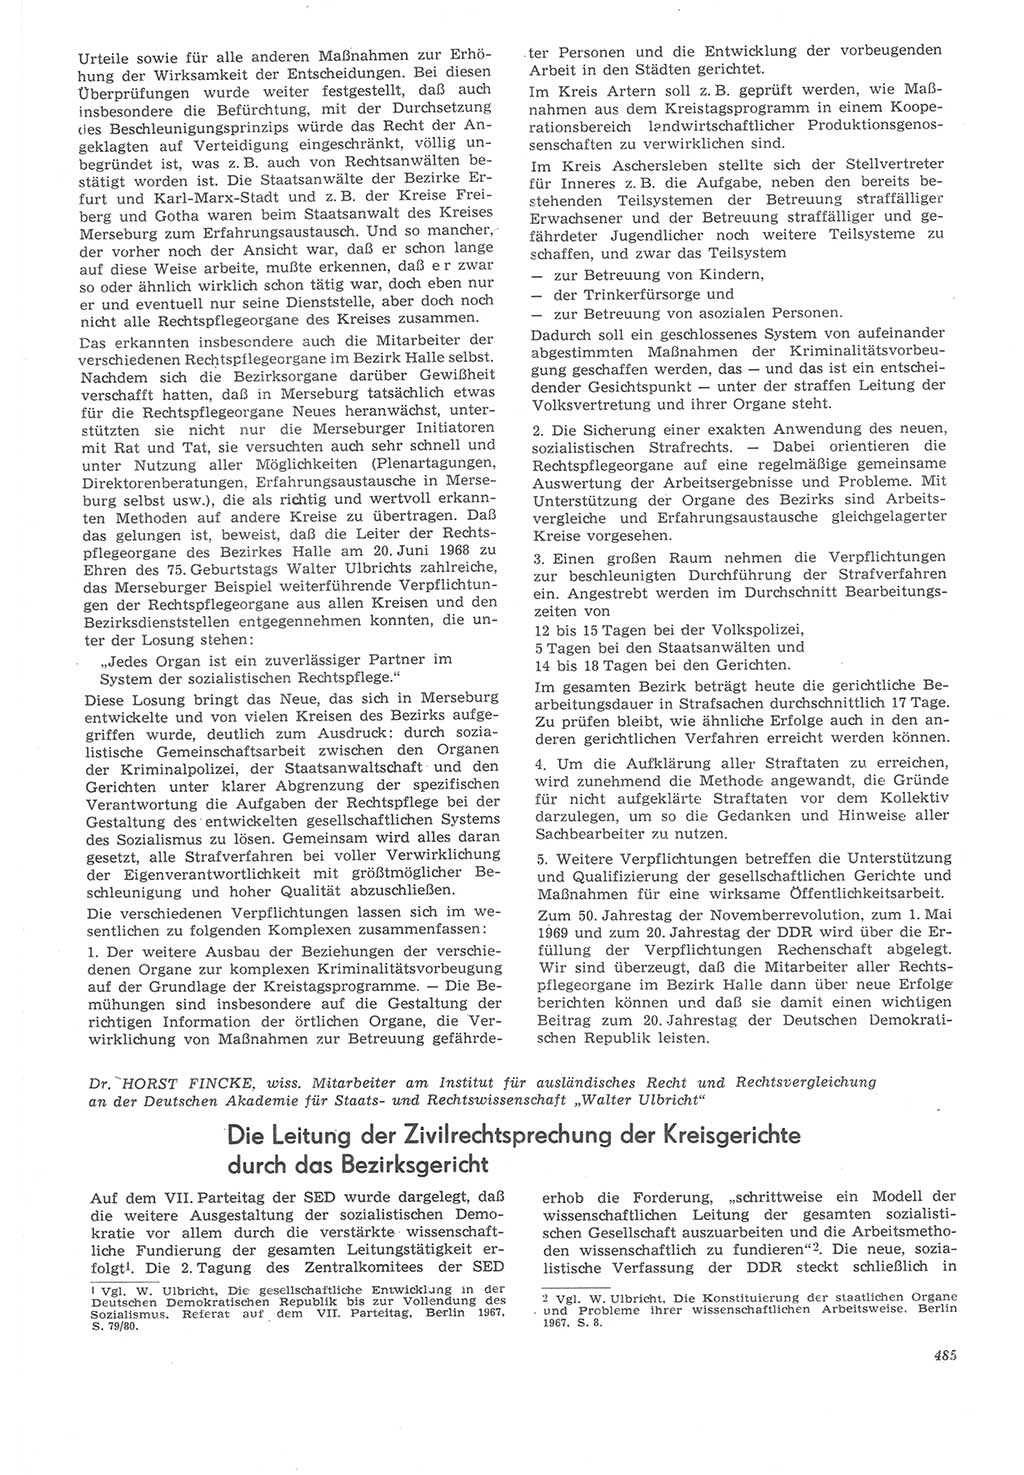 Neue Justiz (NJ), Zeitschrift für Recht und Rechtswissenschaft [Deutsche Demokratische Republik (DDR)], 22. Jahrgang 1968, Seite 485 (NJ DDR 1968, S. 485)